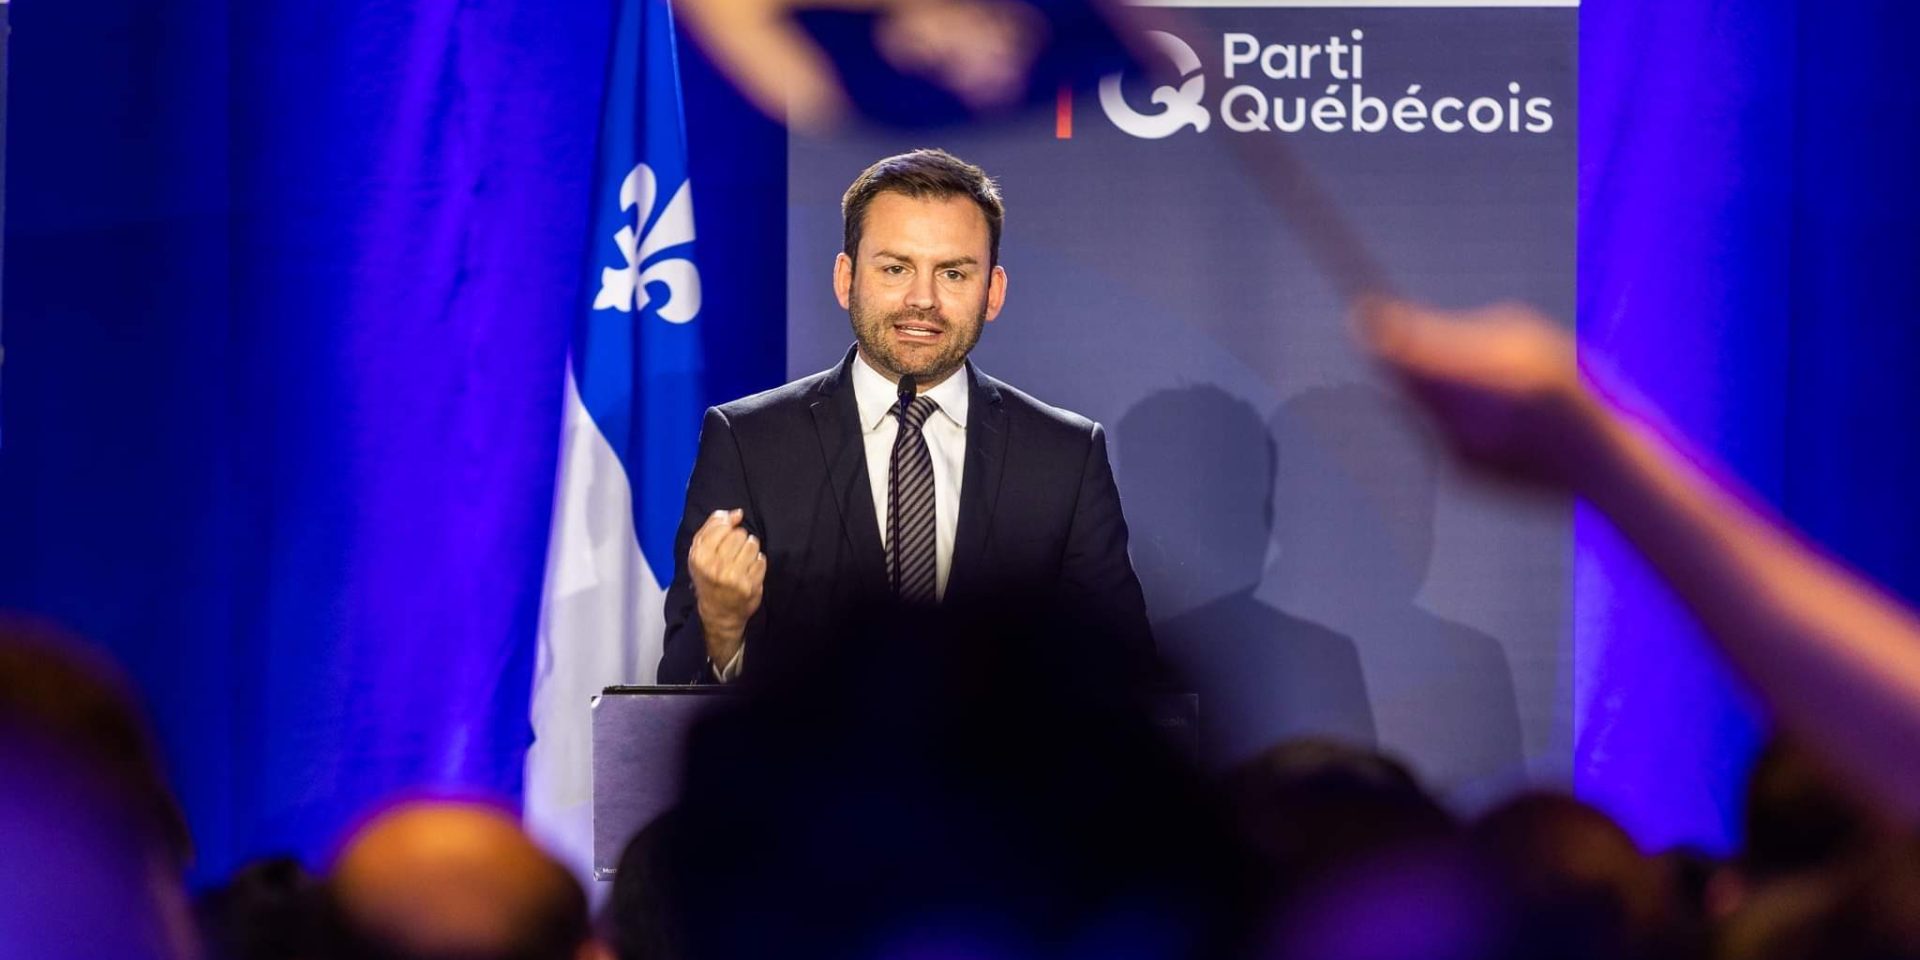 Les 3 députés du Parti québécois espèrent siéger bientôt à l’Assemblée